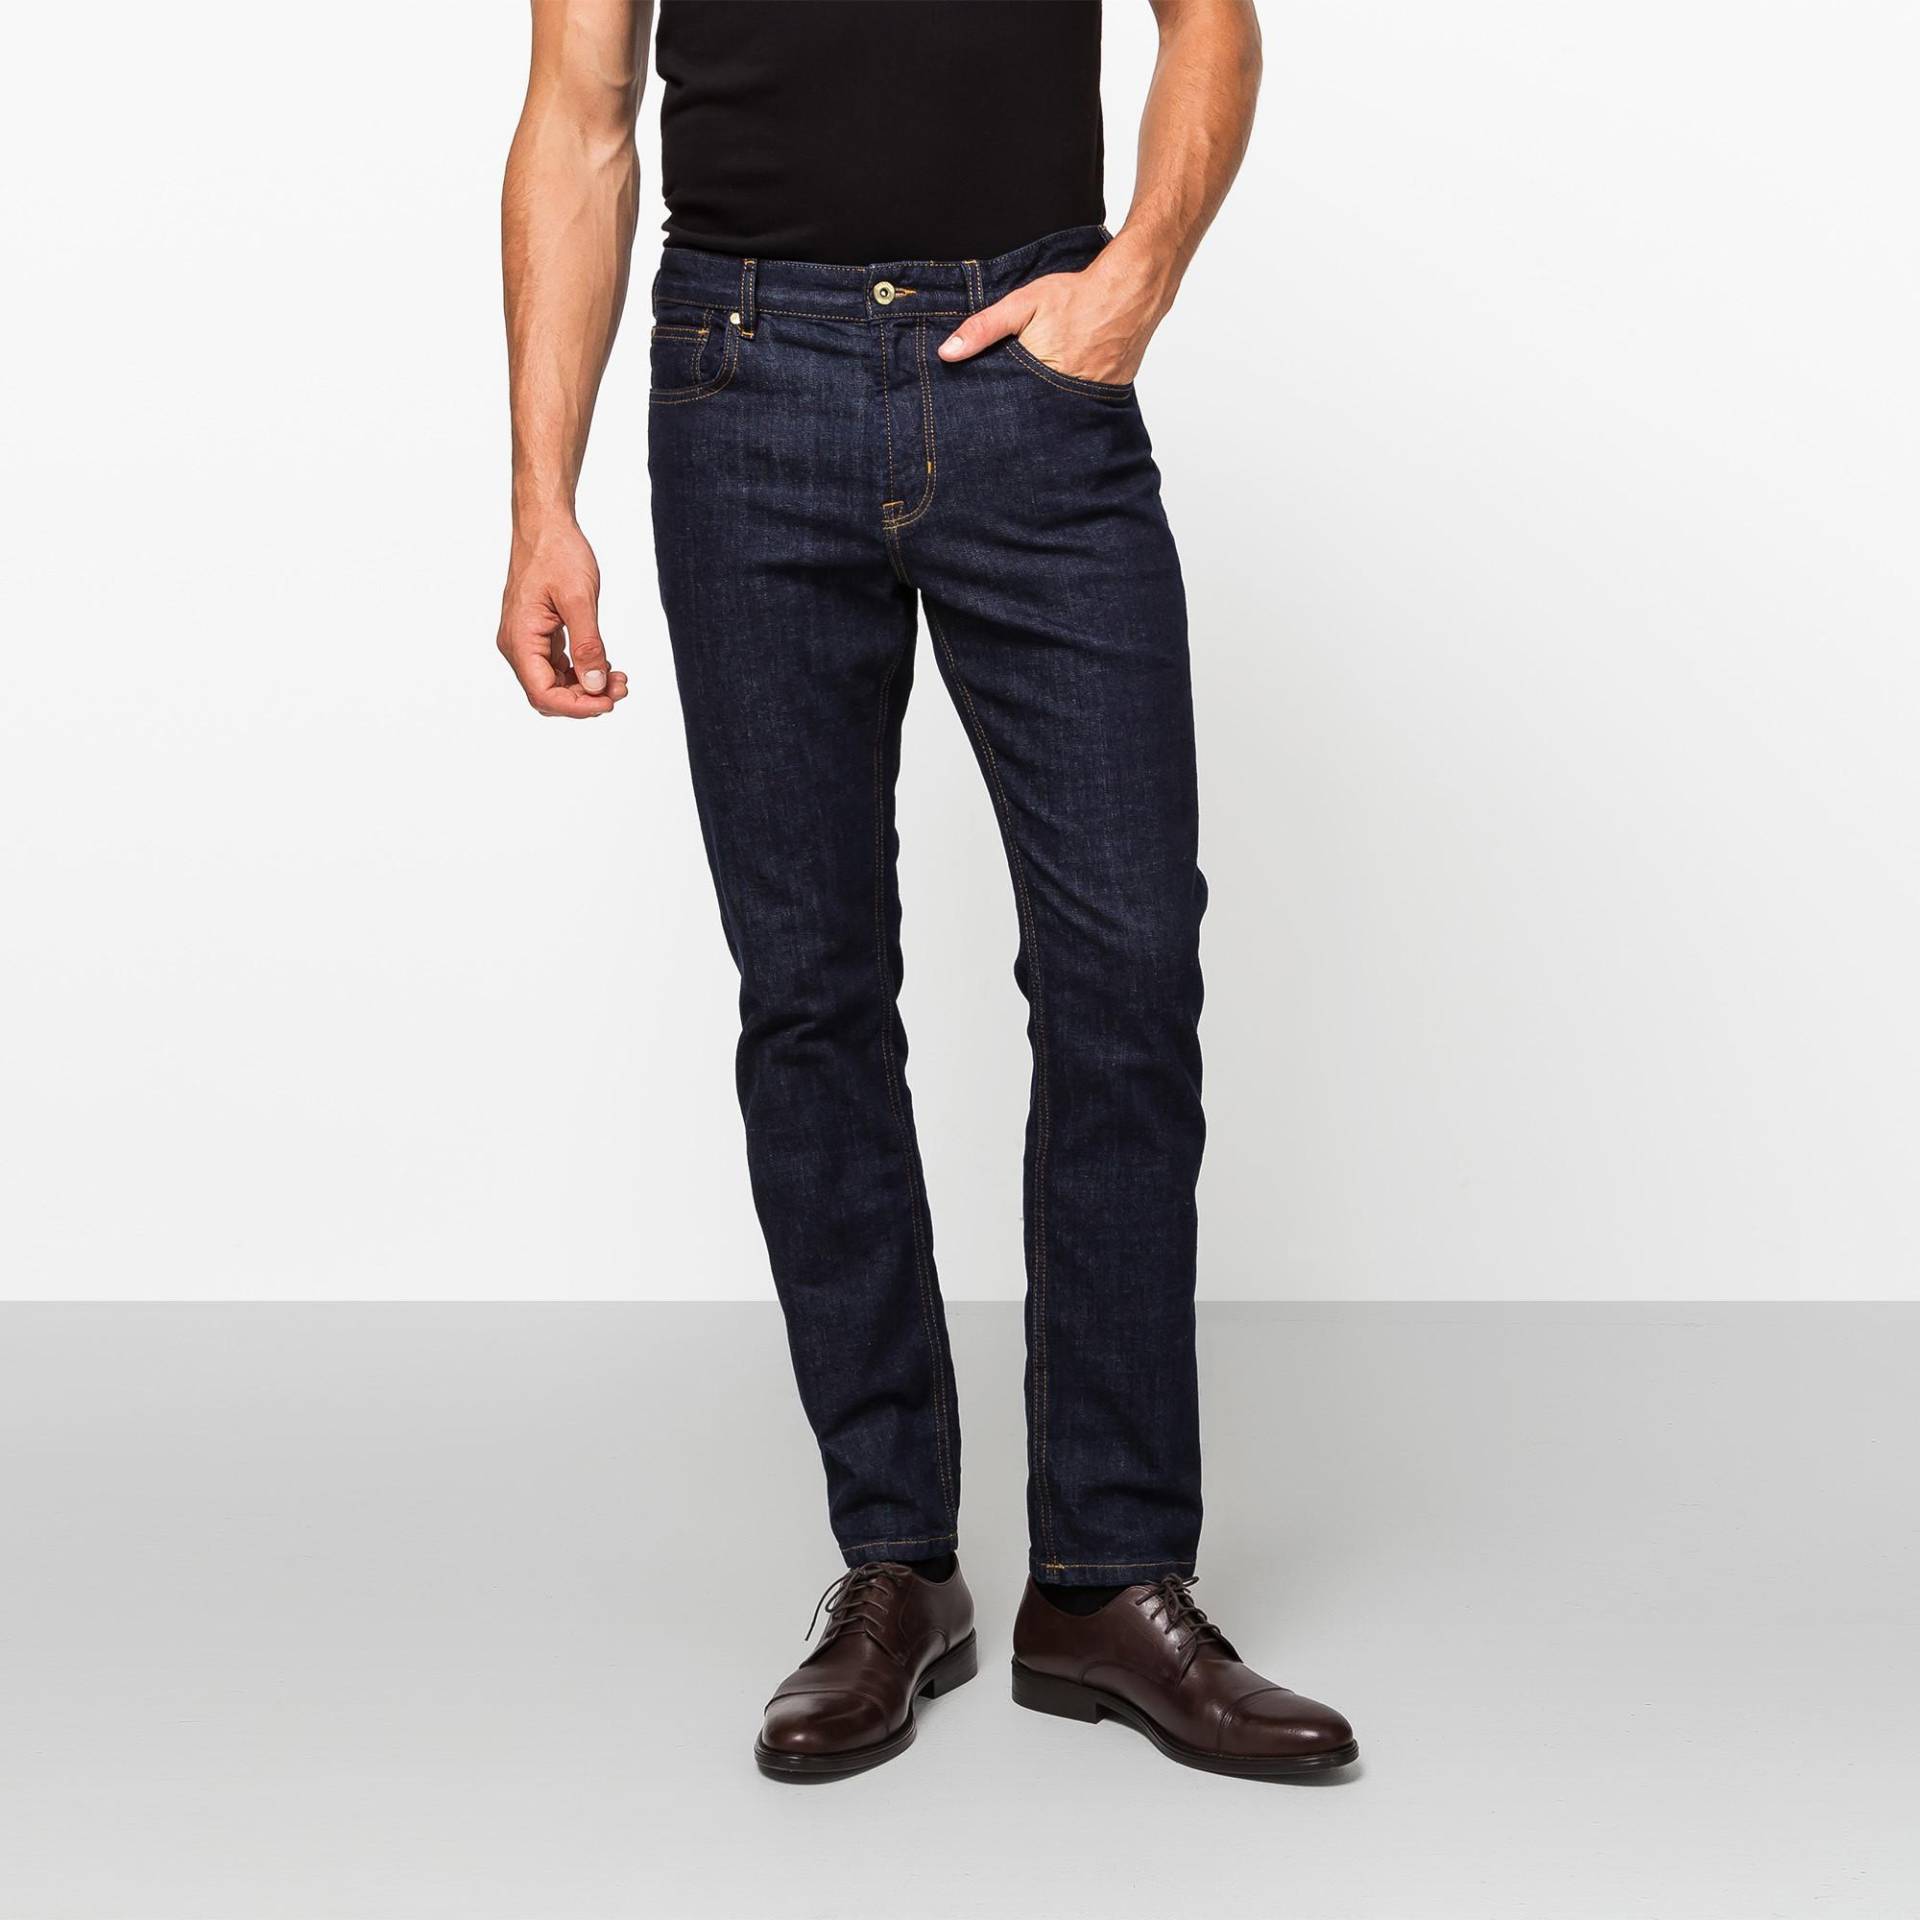 Jeans, Slim Fit Herren Blau Denim Dunkel L32/W32 von Manor Man